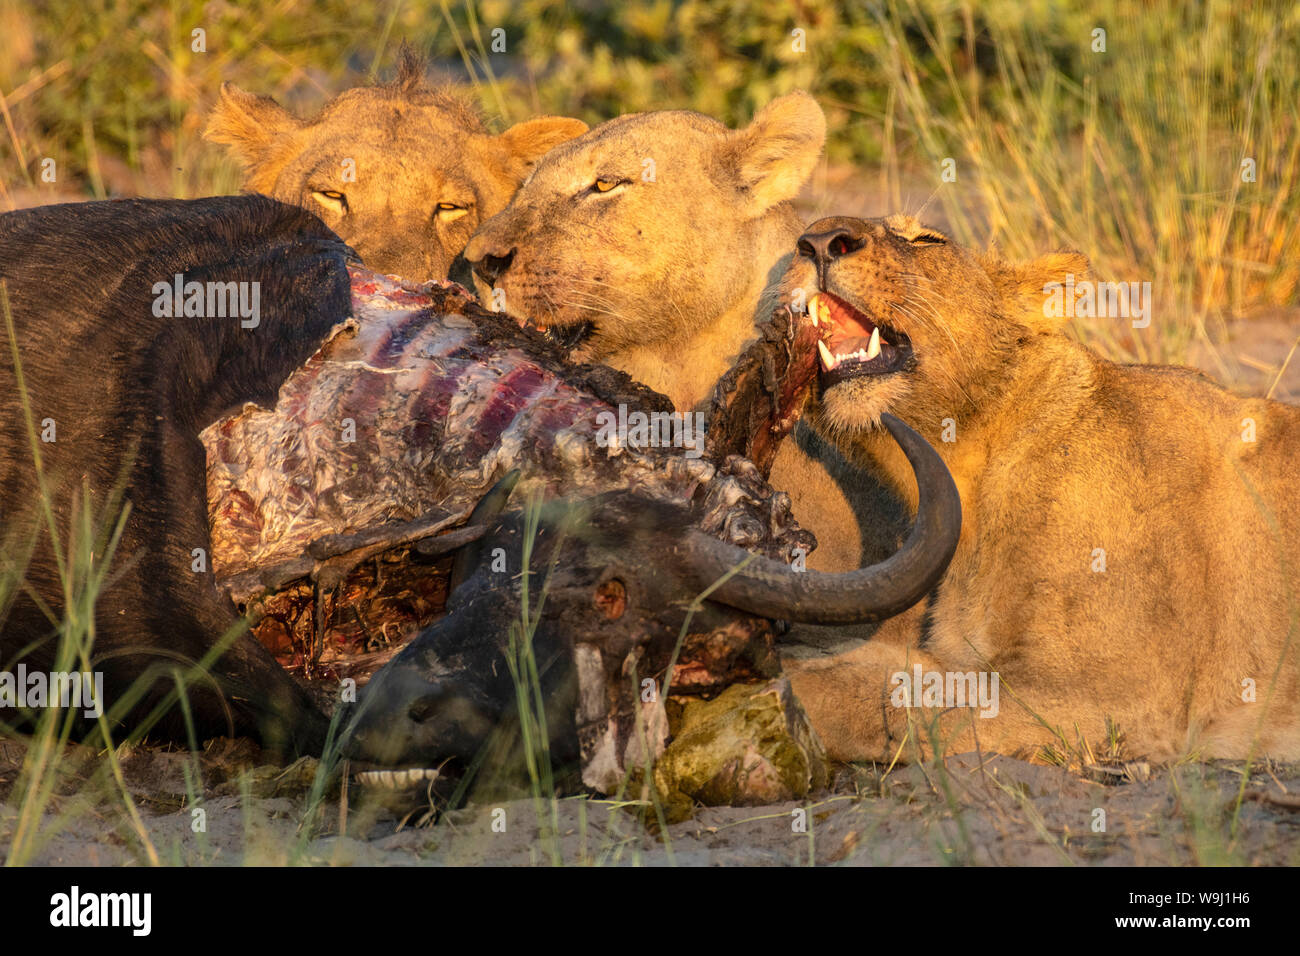 África, África meridional, África, Botswana, el Okavango, Abu, orgullo de león alimentándose en el medio silvestre, 30074405 *** *** título Local, África meridional, África Foto de stock